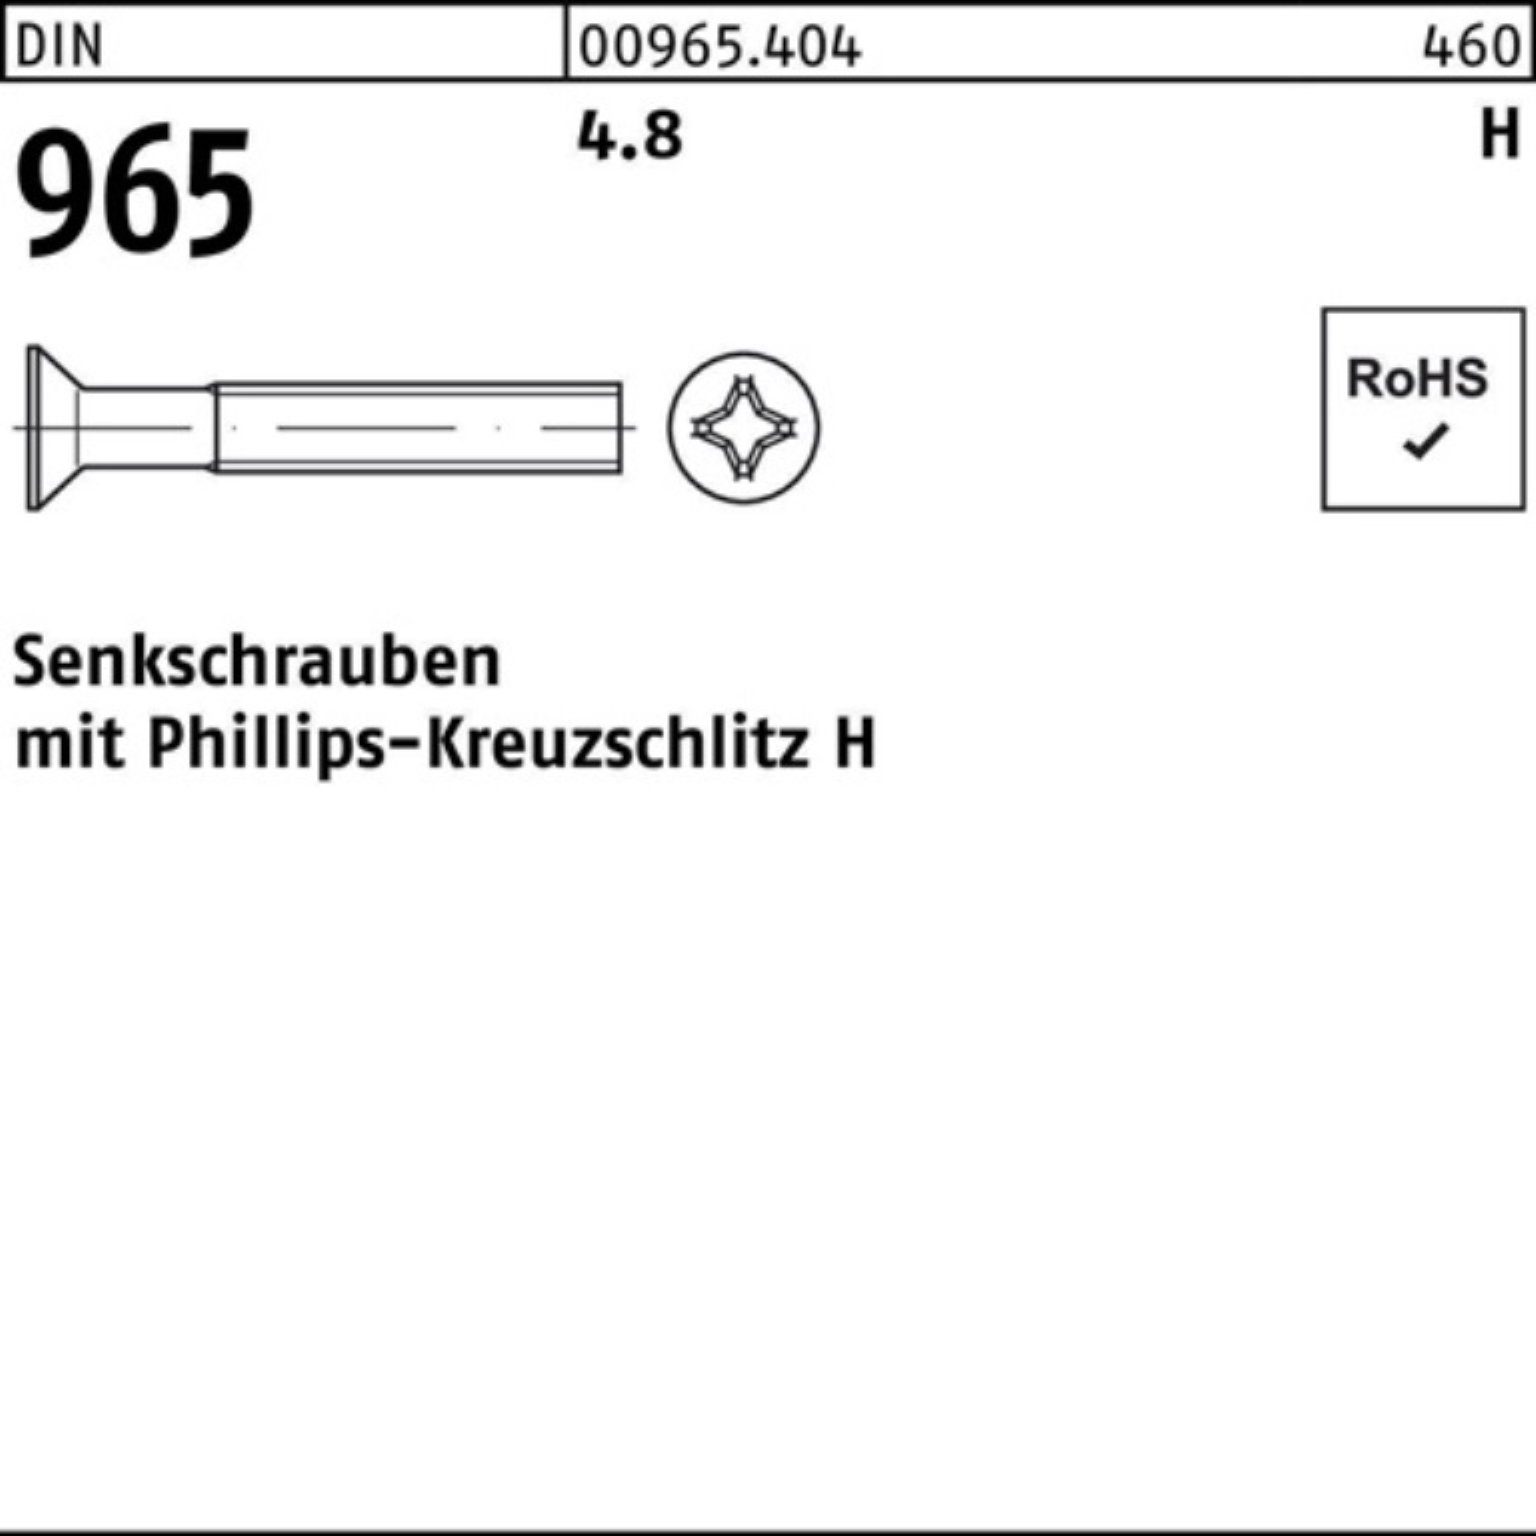 PH Senkschraube 2000 4.8 Reyher Senkschraube DIN 2000er 4 DIN M3x Pack 16-H 965 965 Stück